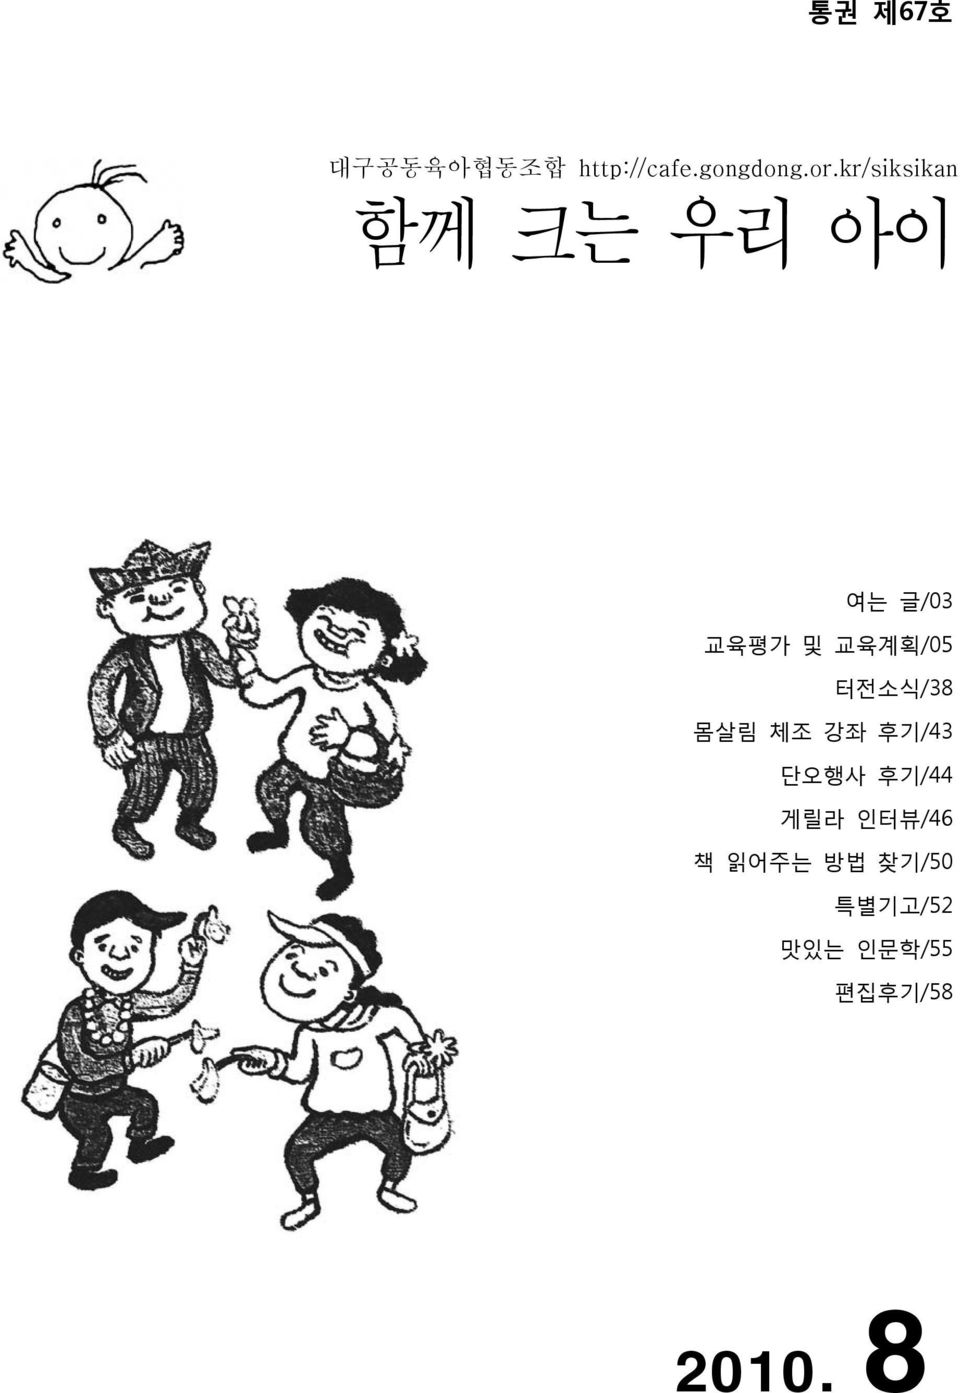 터전소식/38 몸살림 체조 강좌 후기/43 단오행사 후기/44 게릴라 인터뷰/46